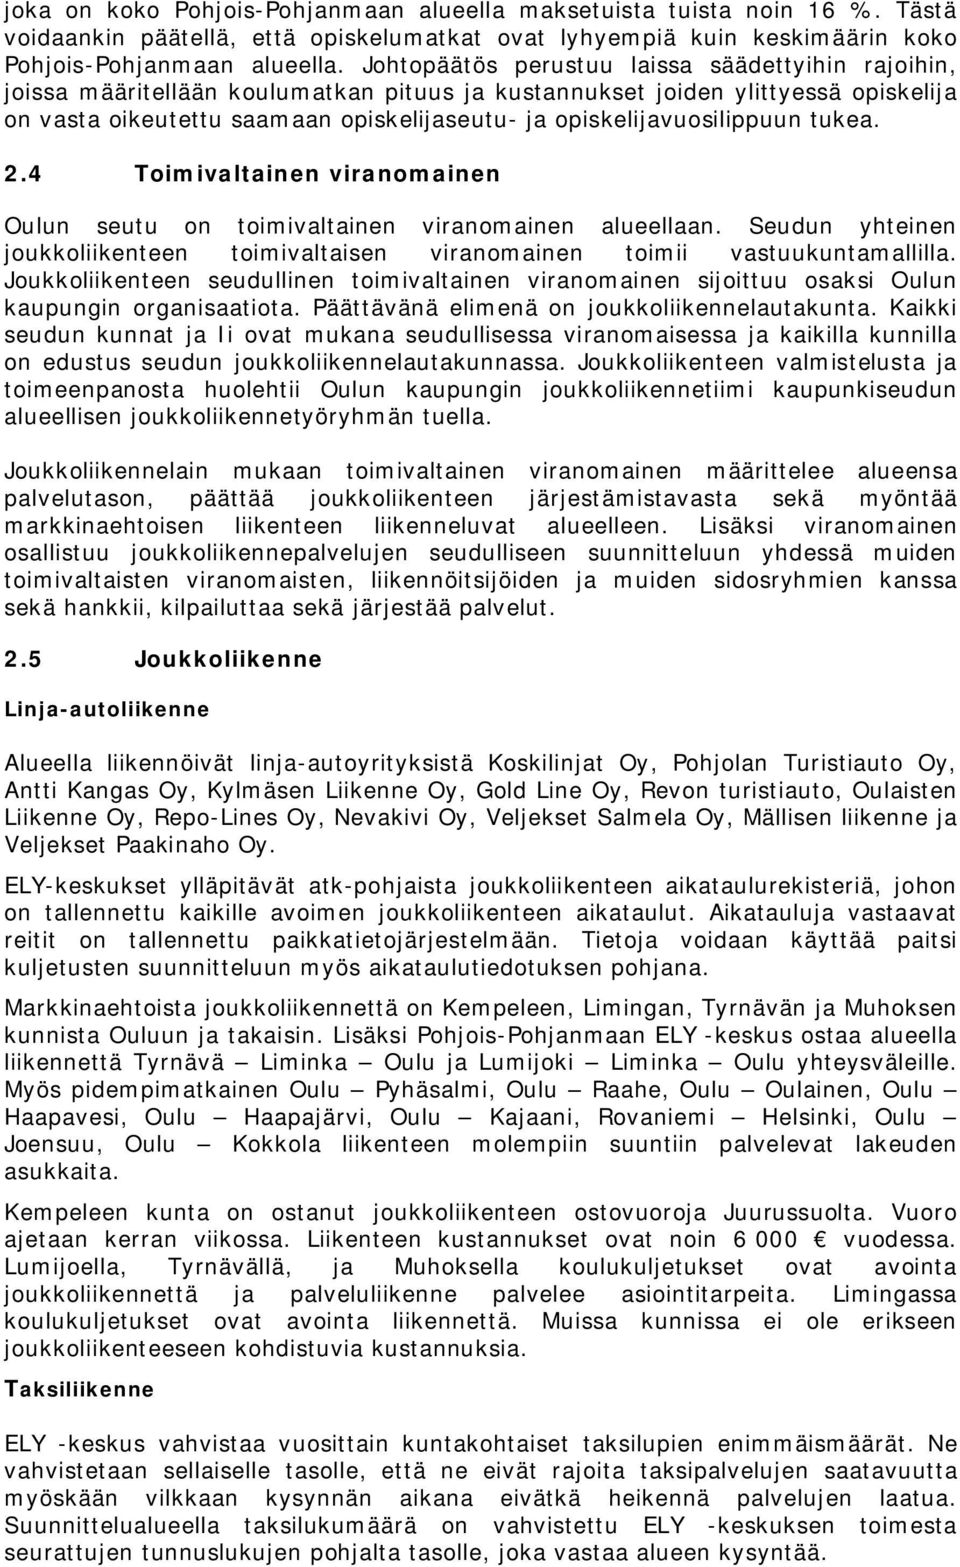 opiskelijavuosilippuun tukea. 2.4 Toimivaltainen viranomainen Oulun seutu on toimivaltainen viranomainen alueellaan.